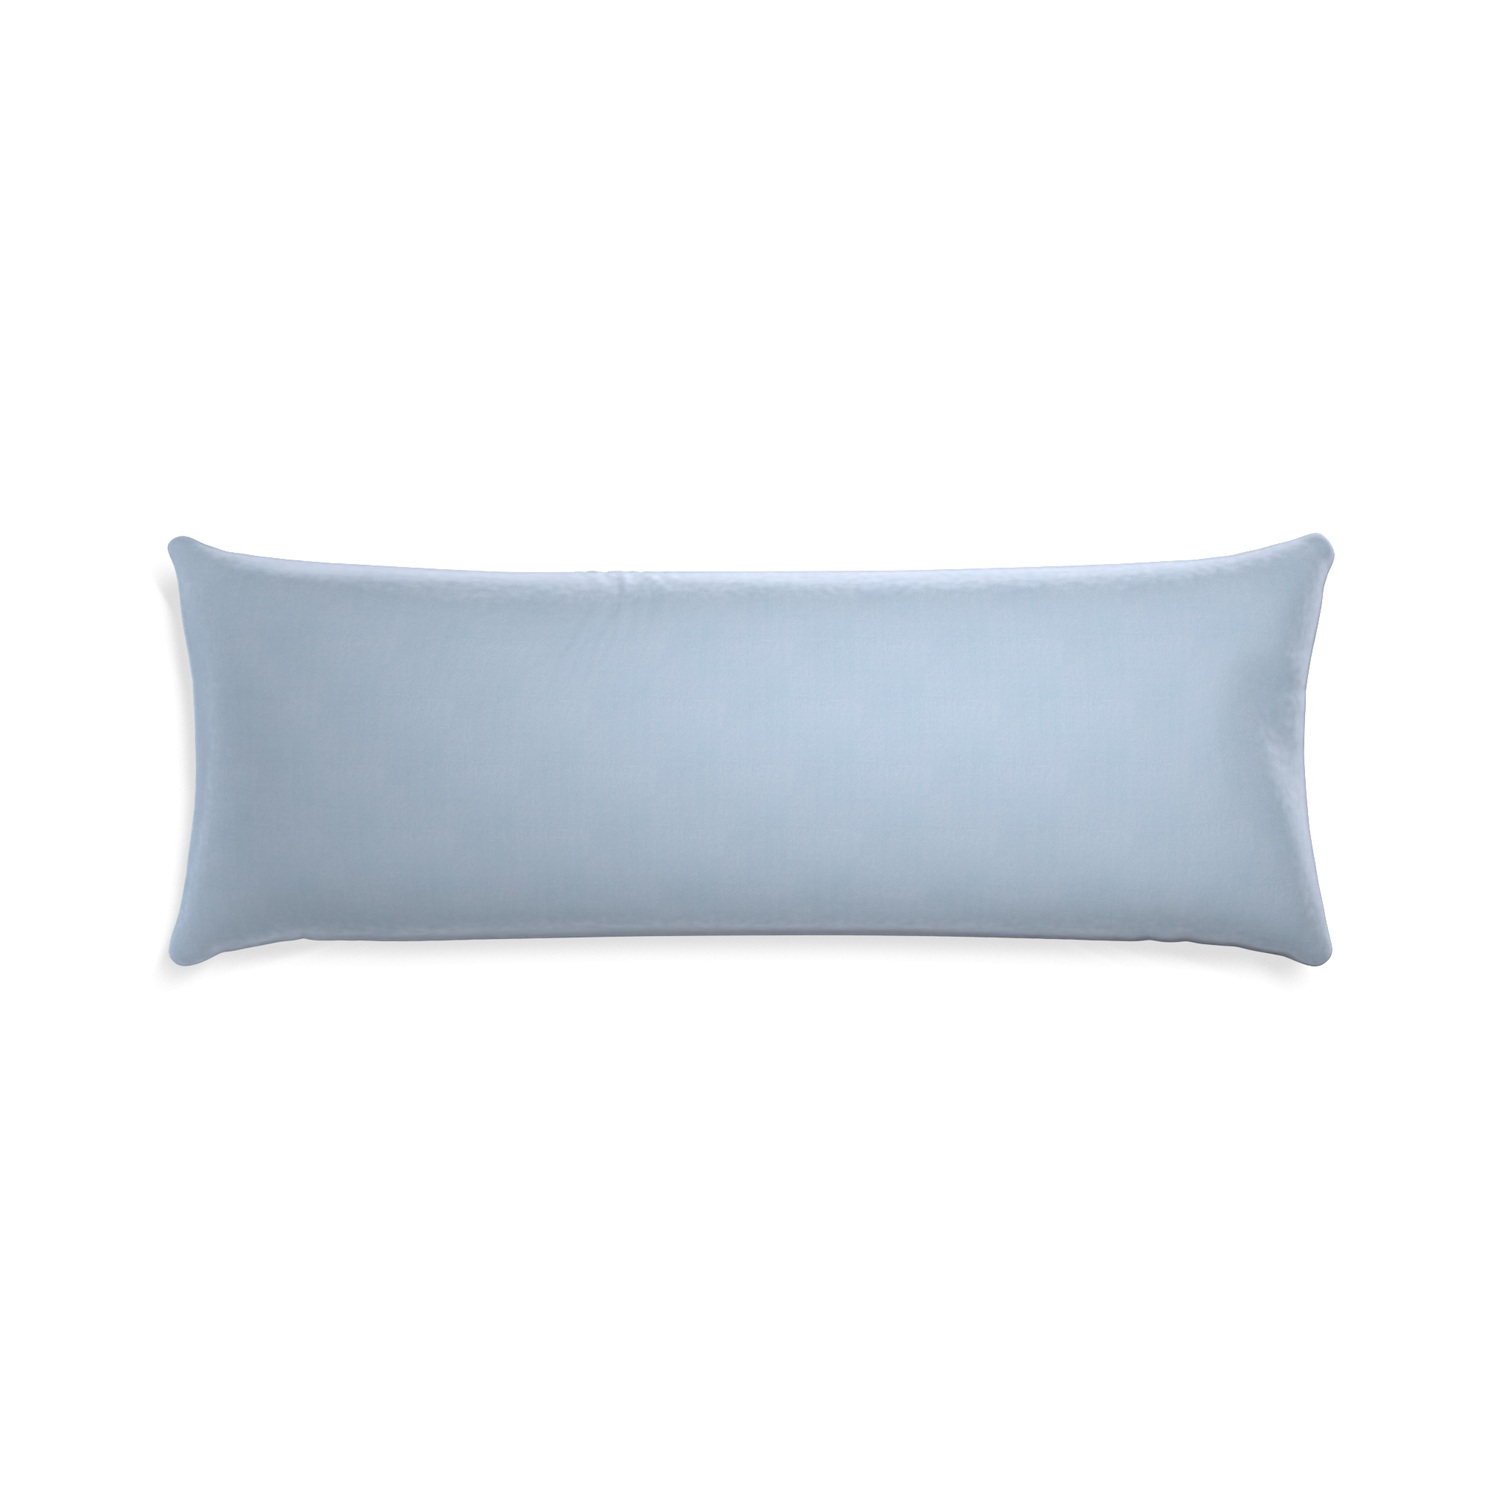 Xl-lumbar sky velvet custom pillow with none on white background